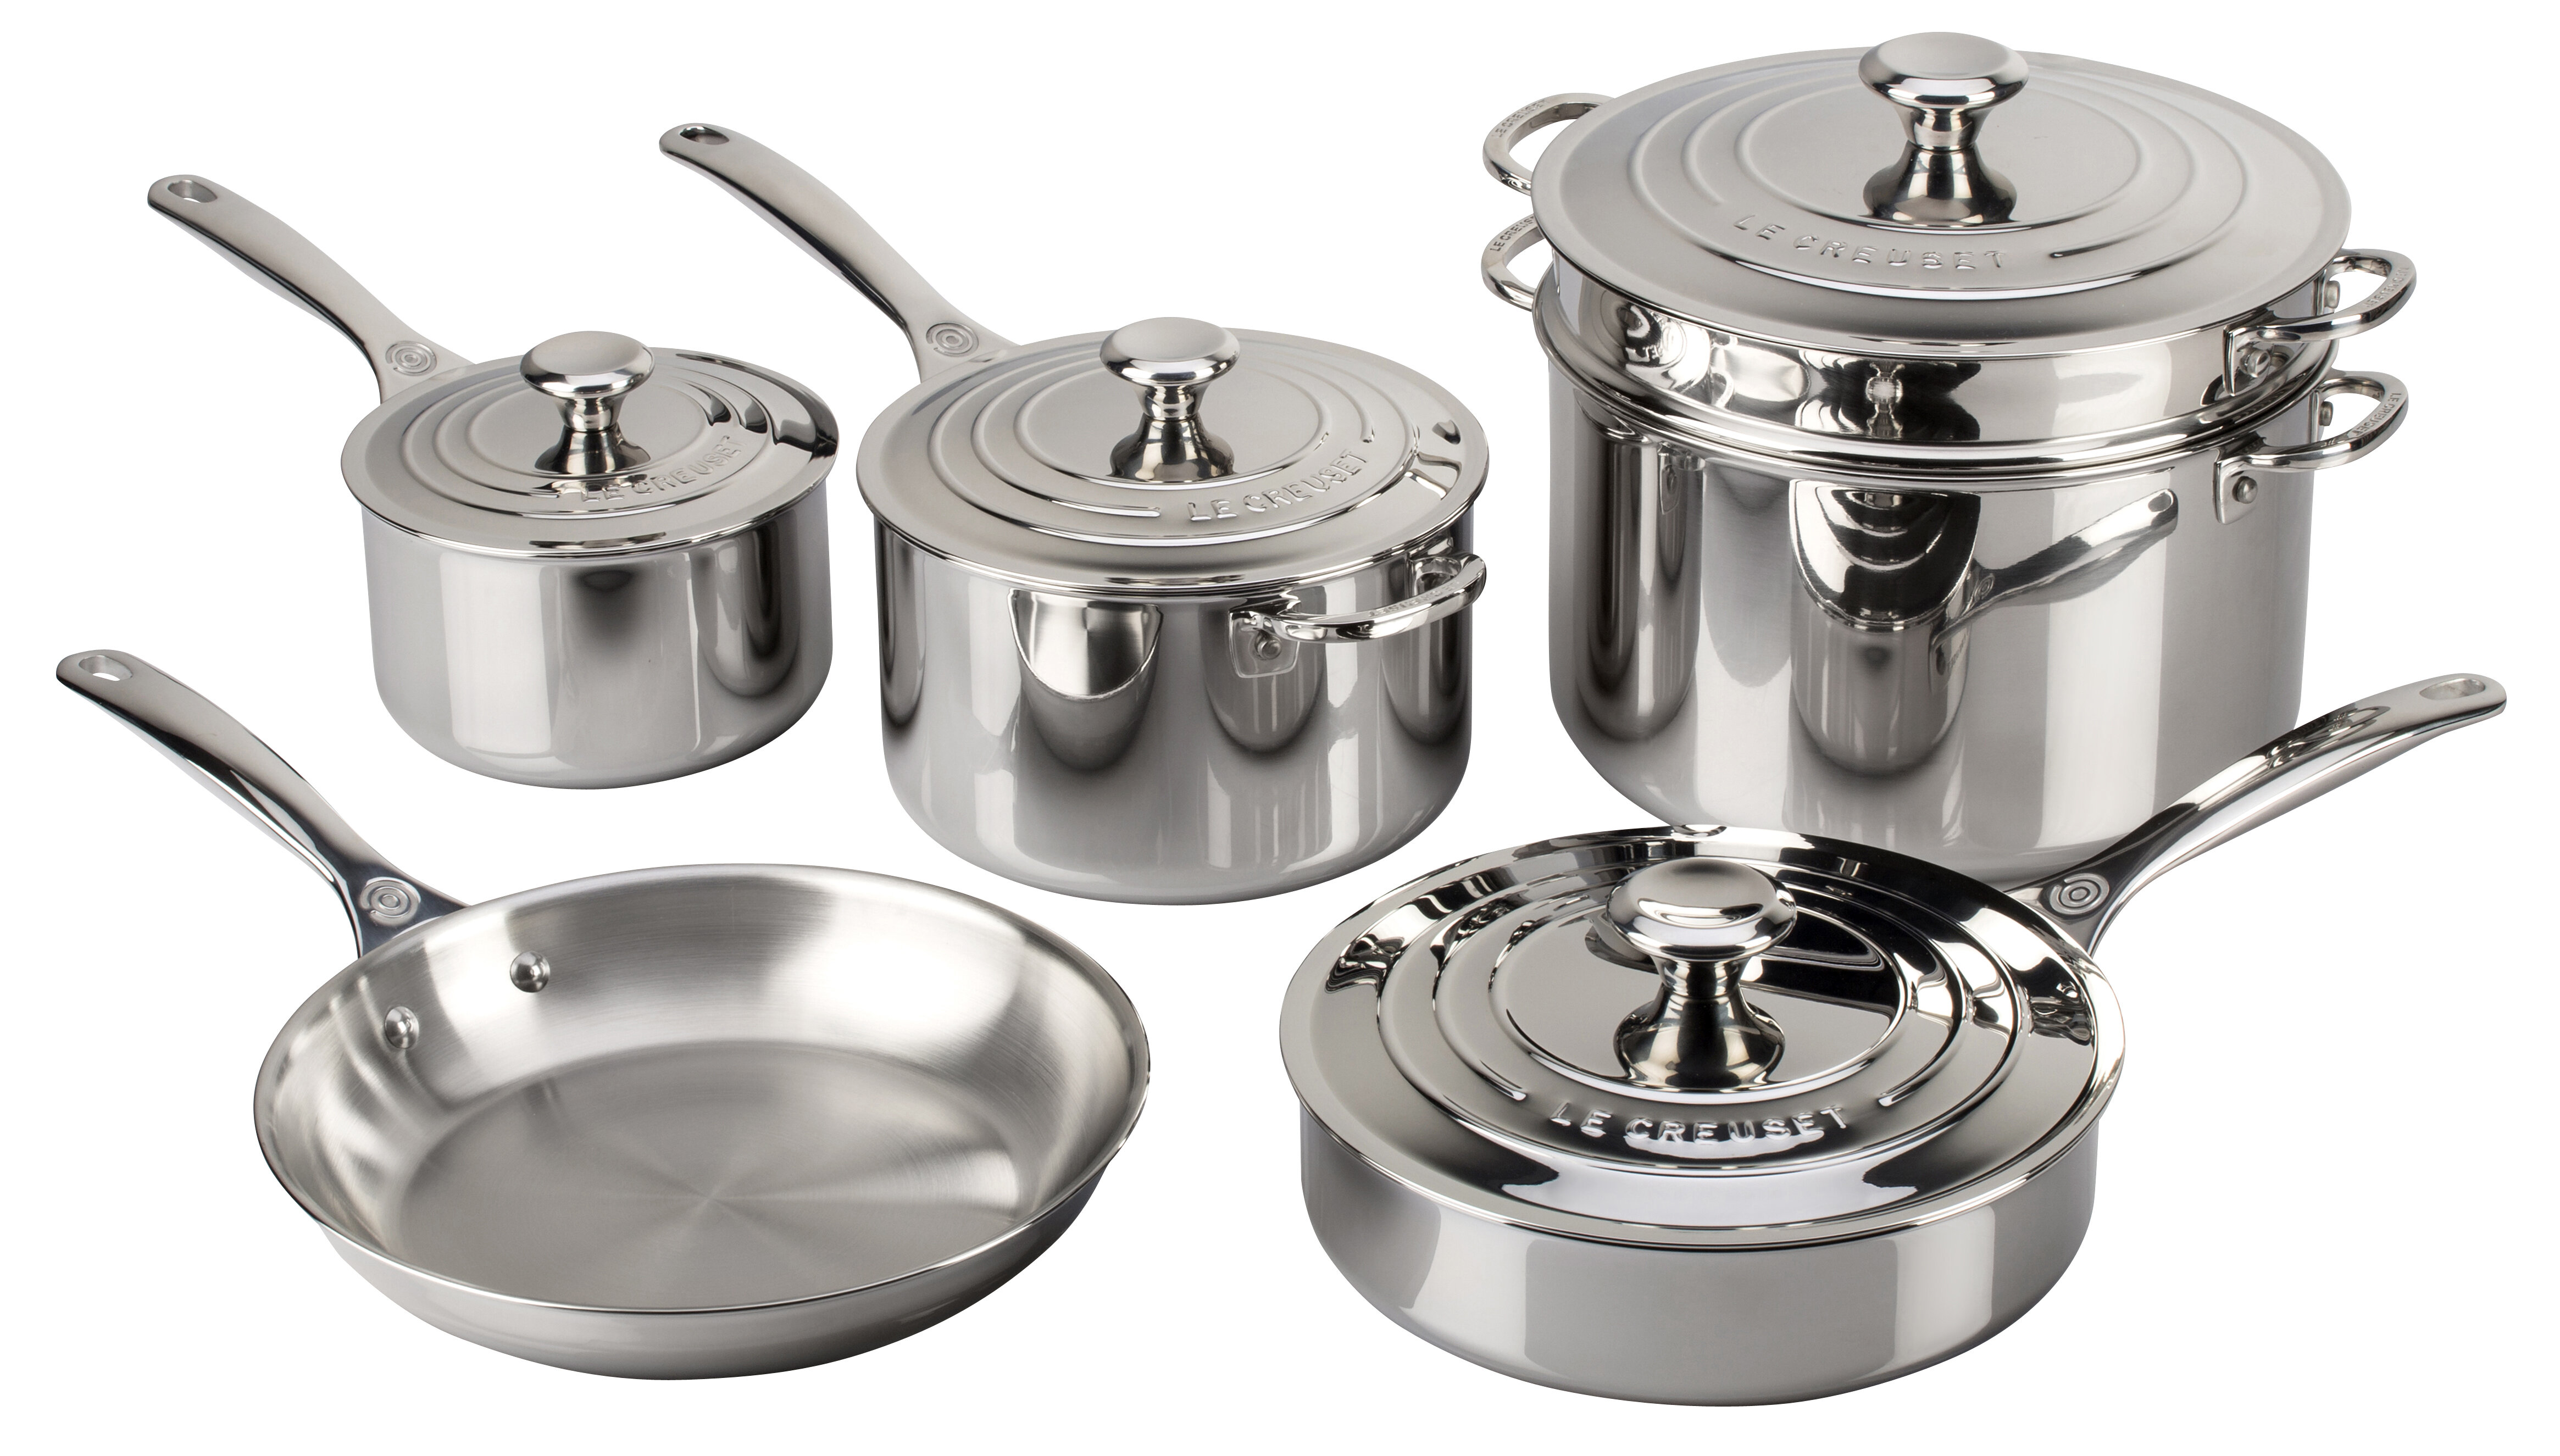 https://assets.wfcdn.com/im/68590446/compr-r85/5578/55780850/le-creuset-stainless-steel-10-piece-cookware-set.jpg